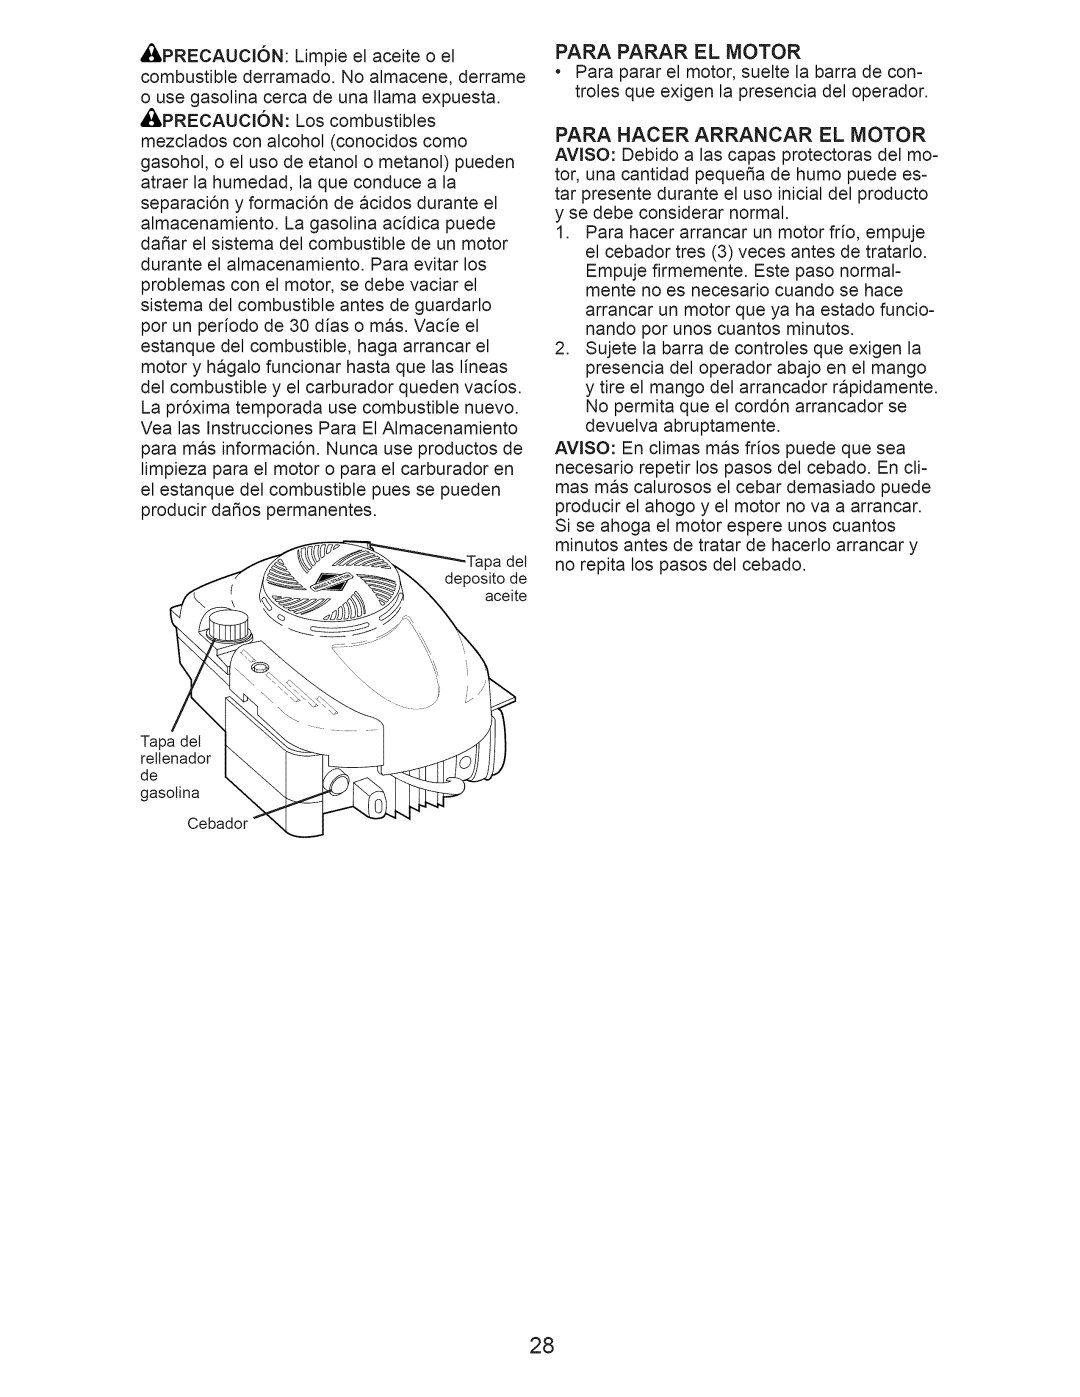 Craftsman 917.376232 manual Para Hacer Arrancar El Motor 